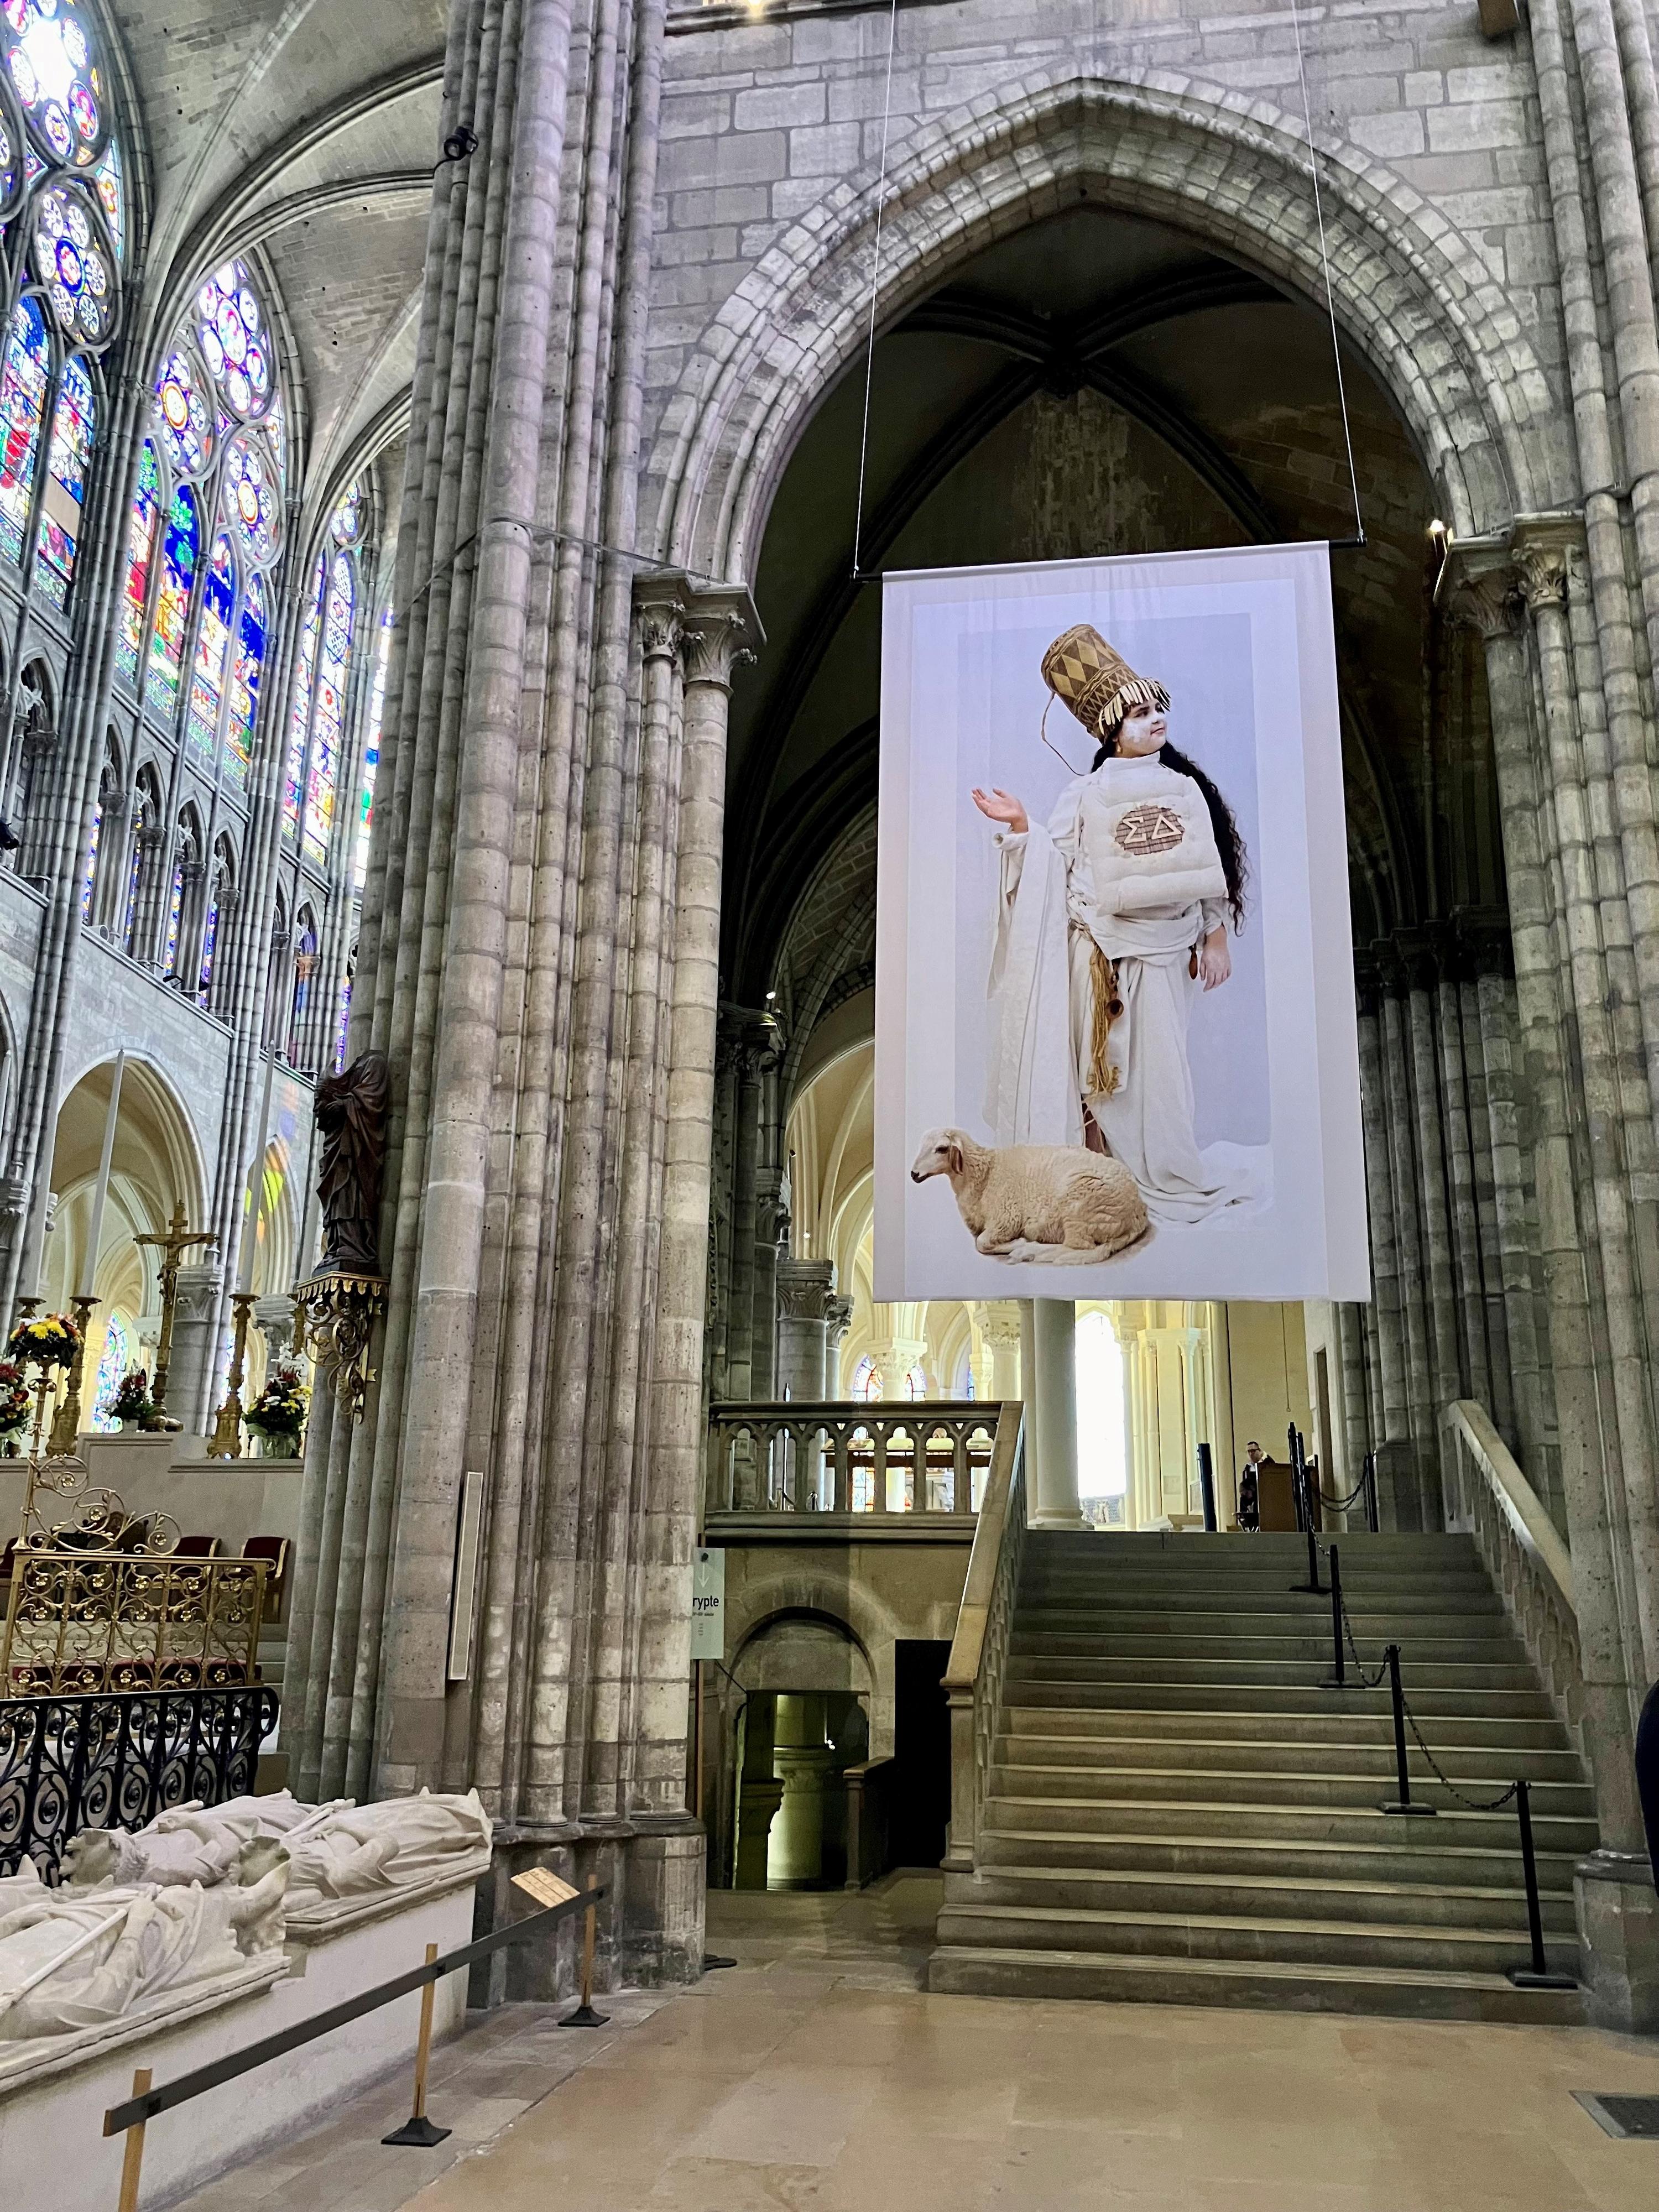 Au coeur de la basilique de Saint-Denis, les photos de l'exposition "La trêve" de Sophie Comtet Kouyaté rappellent l'esprit olympique. [RTS - Melissa Härtel]